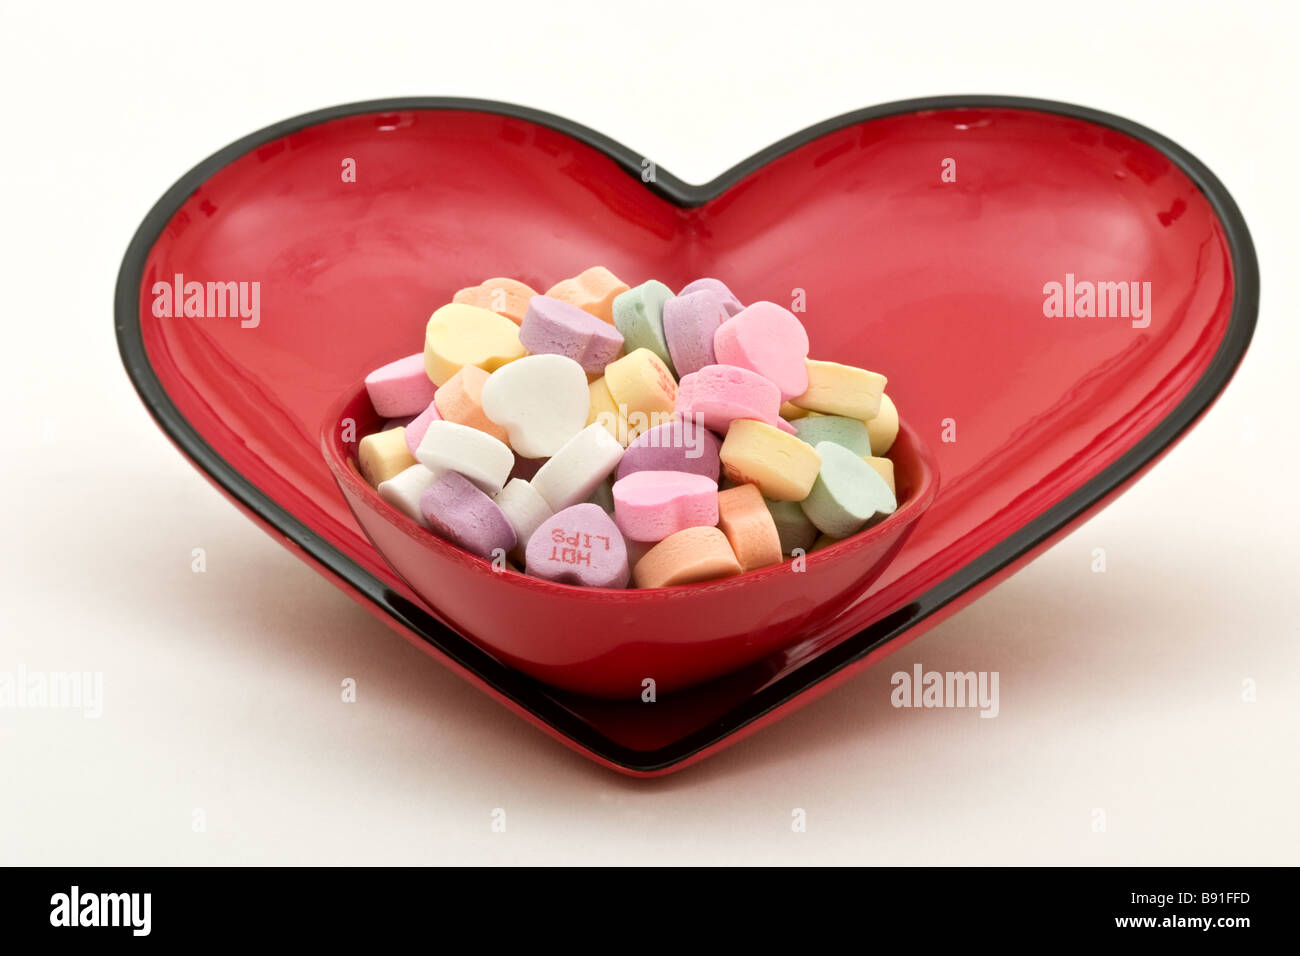 Petite bonbonnière rempli de bonbons en forme de cœur à l'intérieur d'un grand plat de bonbons en forme de cœur Banque D'Images